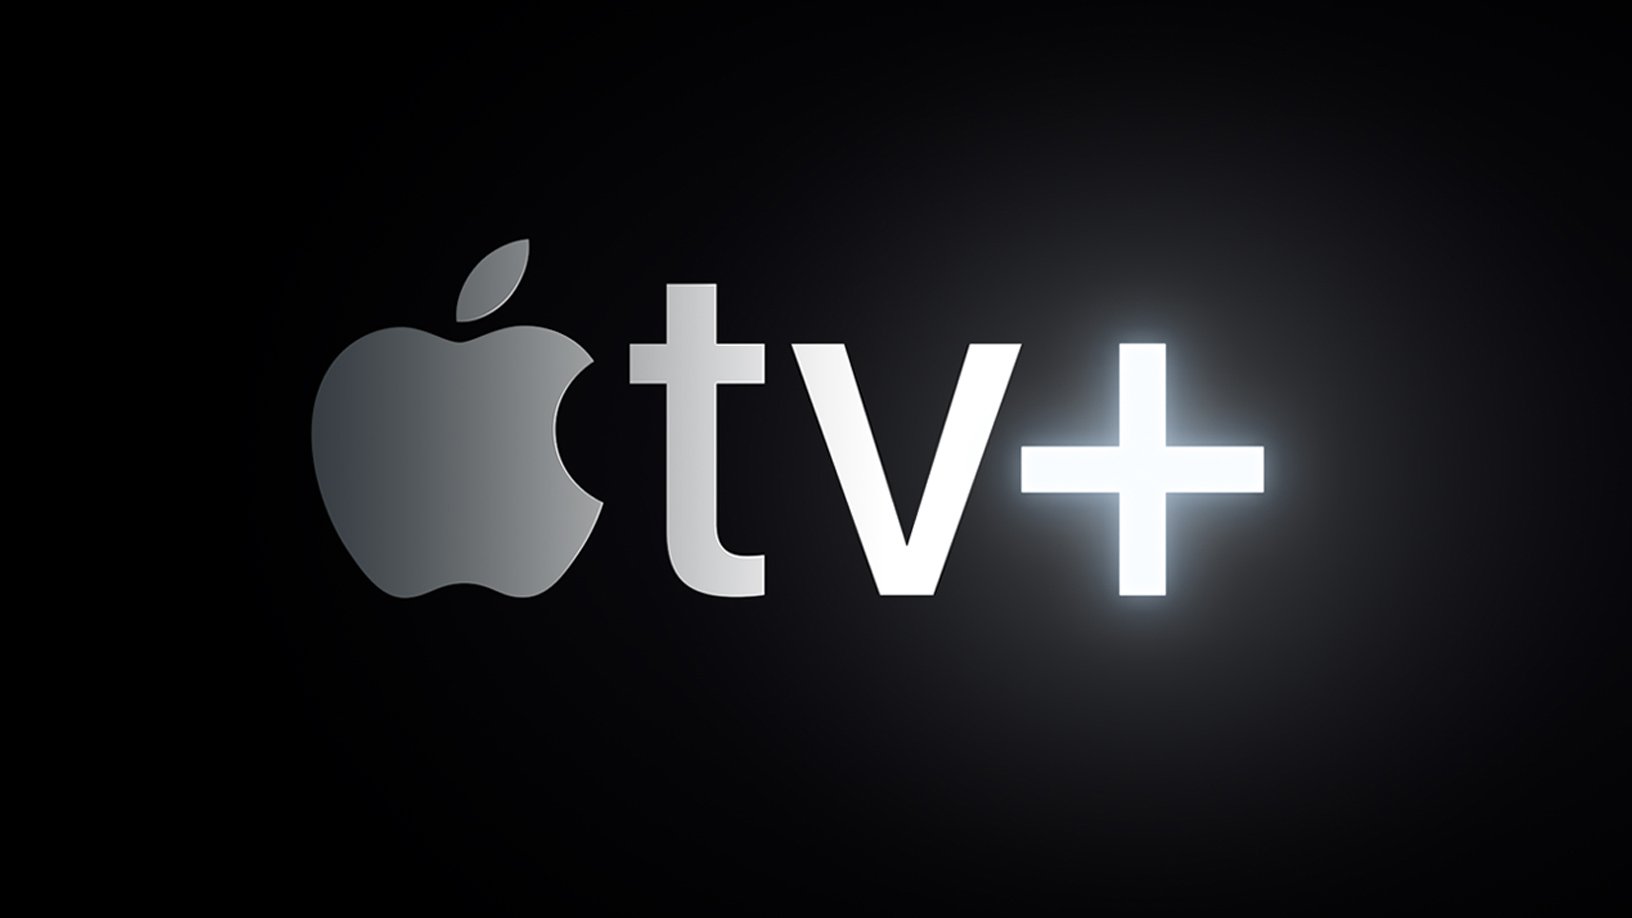 apple-introduces-apple-tv-plus-03252019.jpg